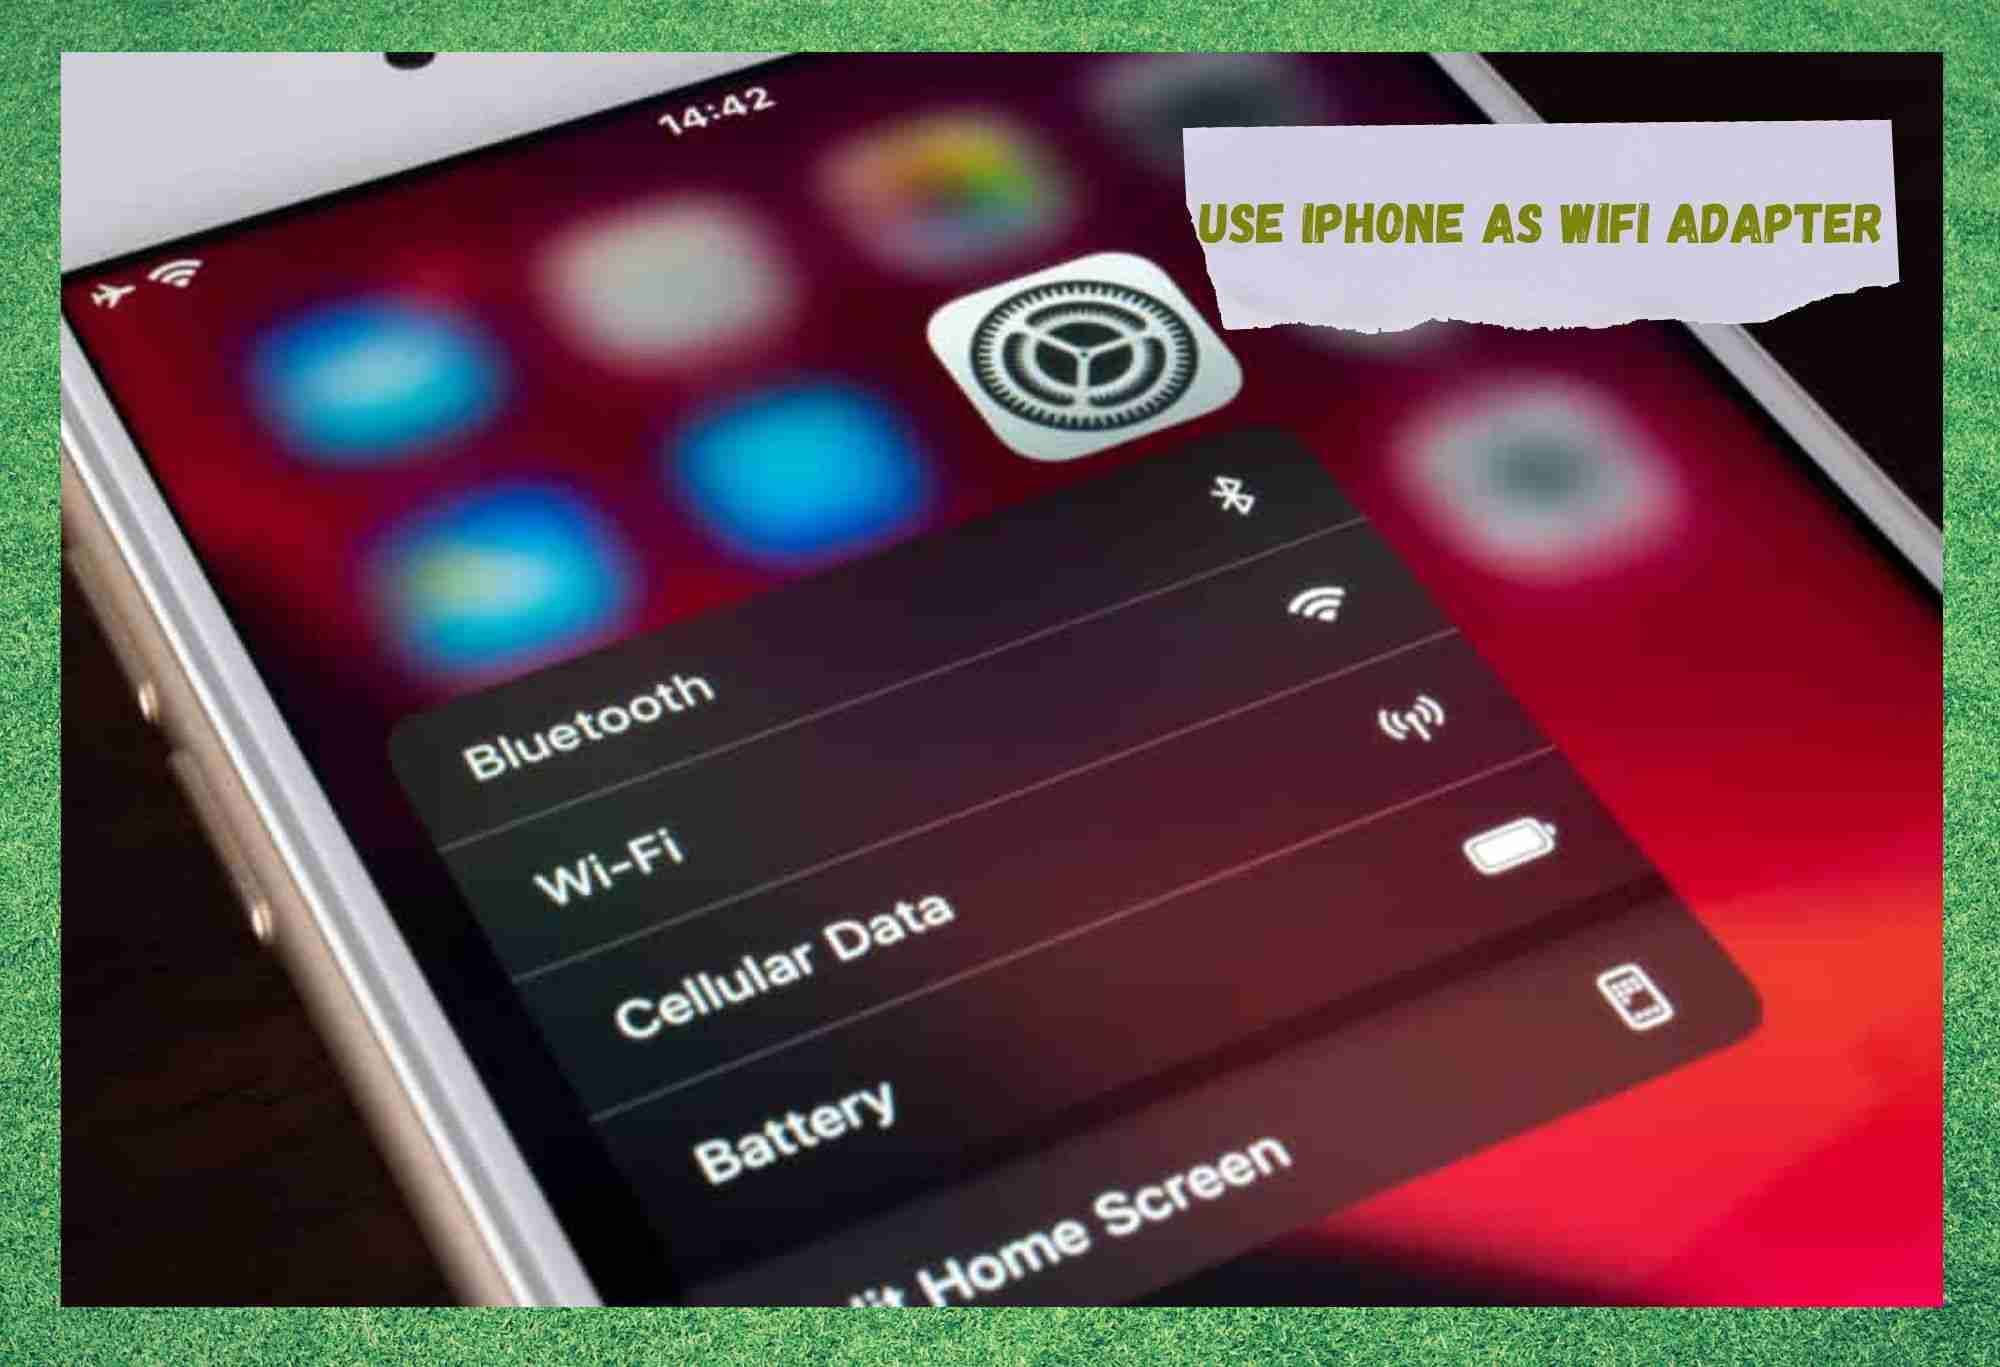 iPhone ကို WiFi Adapter အဖြစ် သင်အသုံးပြုရန် ဖြစ်နိုင်ပါသလား။